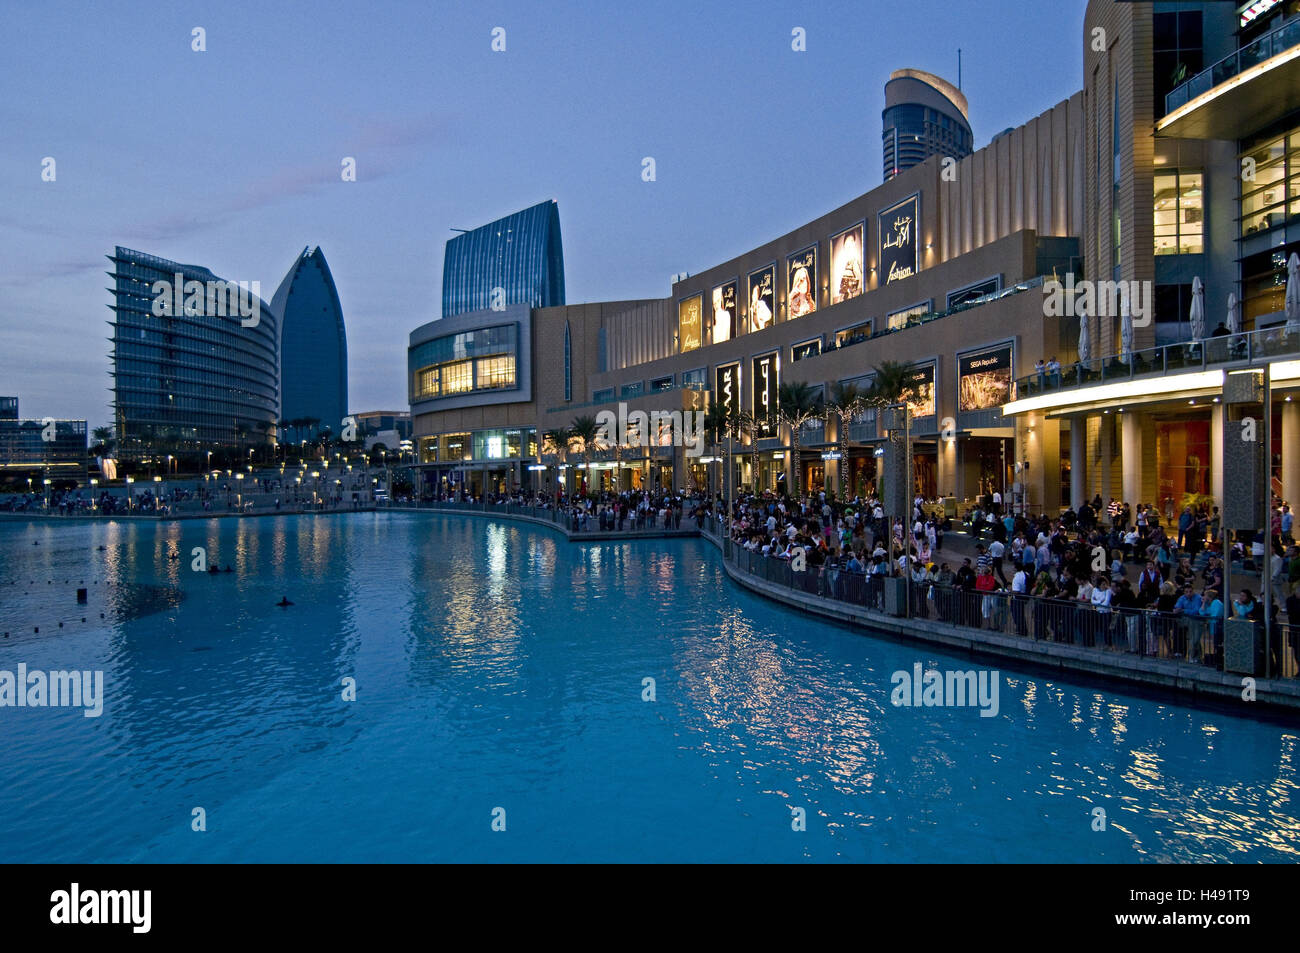 Dubai Shopping Malls Outside